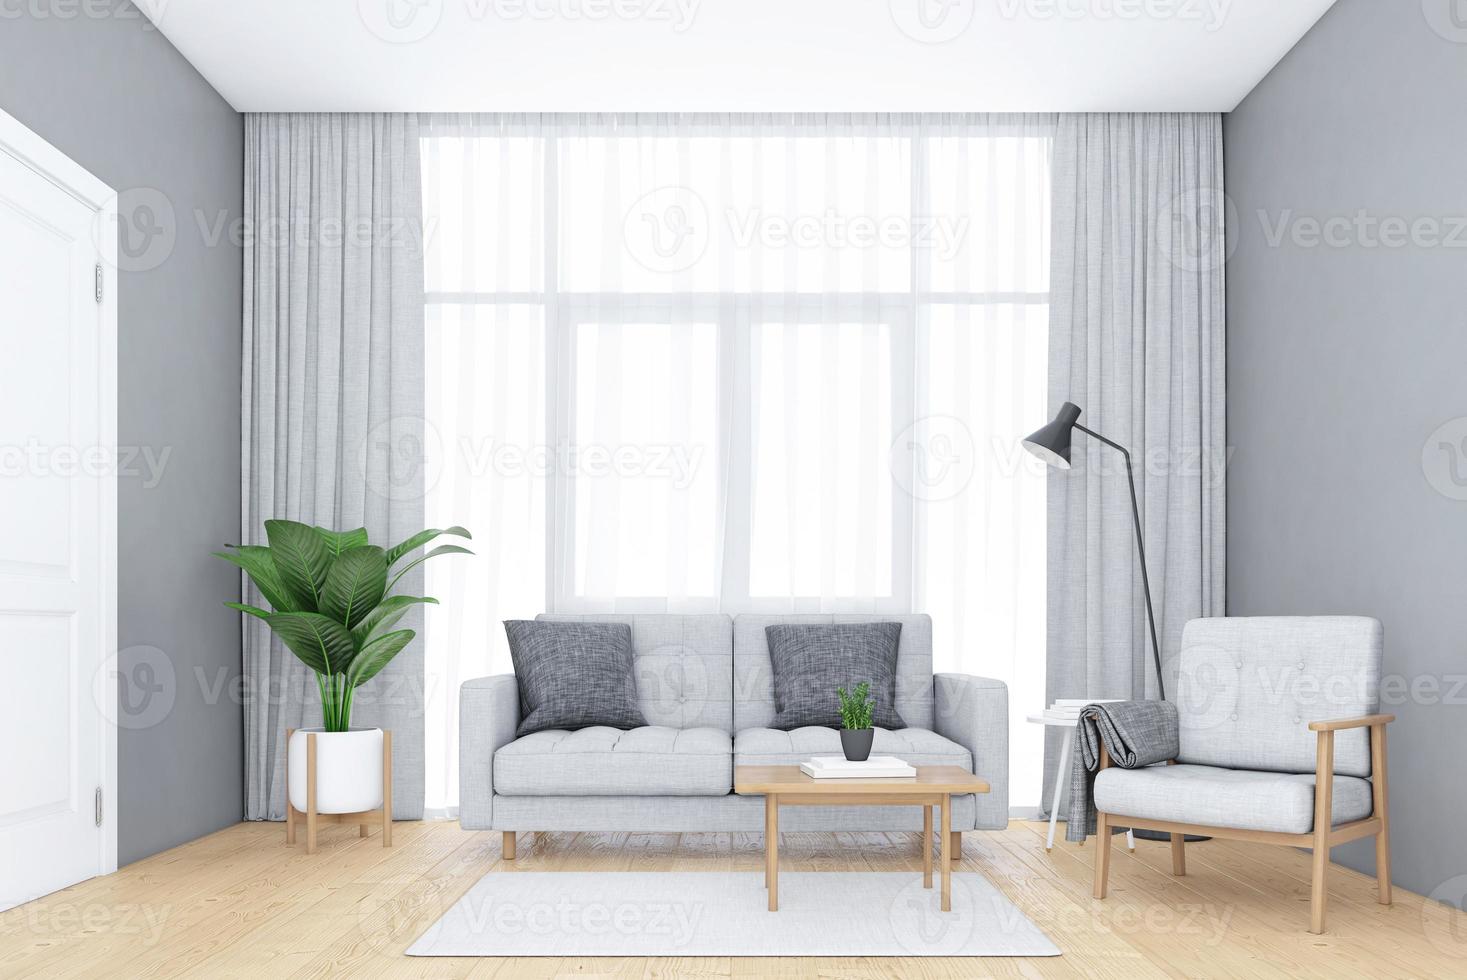 salón minimalista con ventanas y cortinas blancas, sofá y sillón